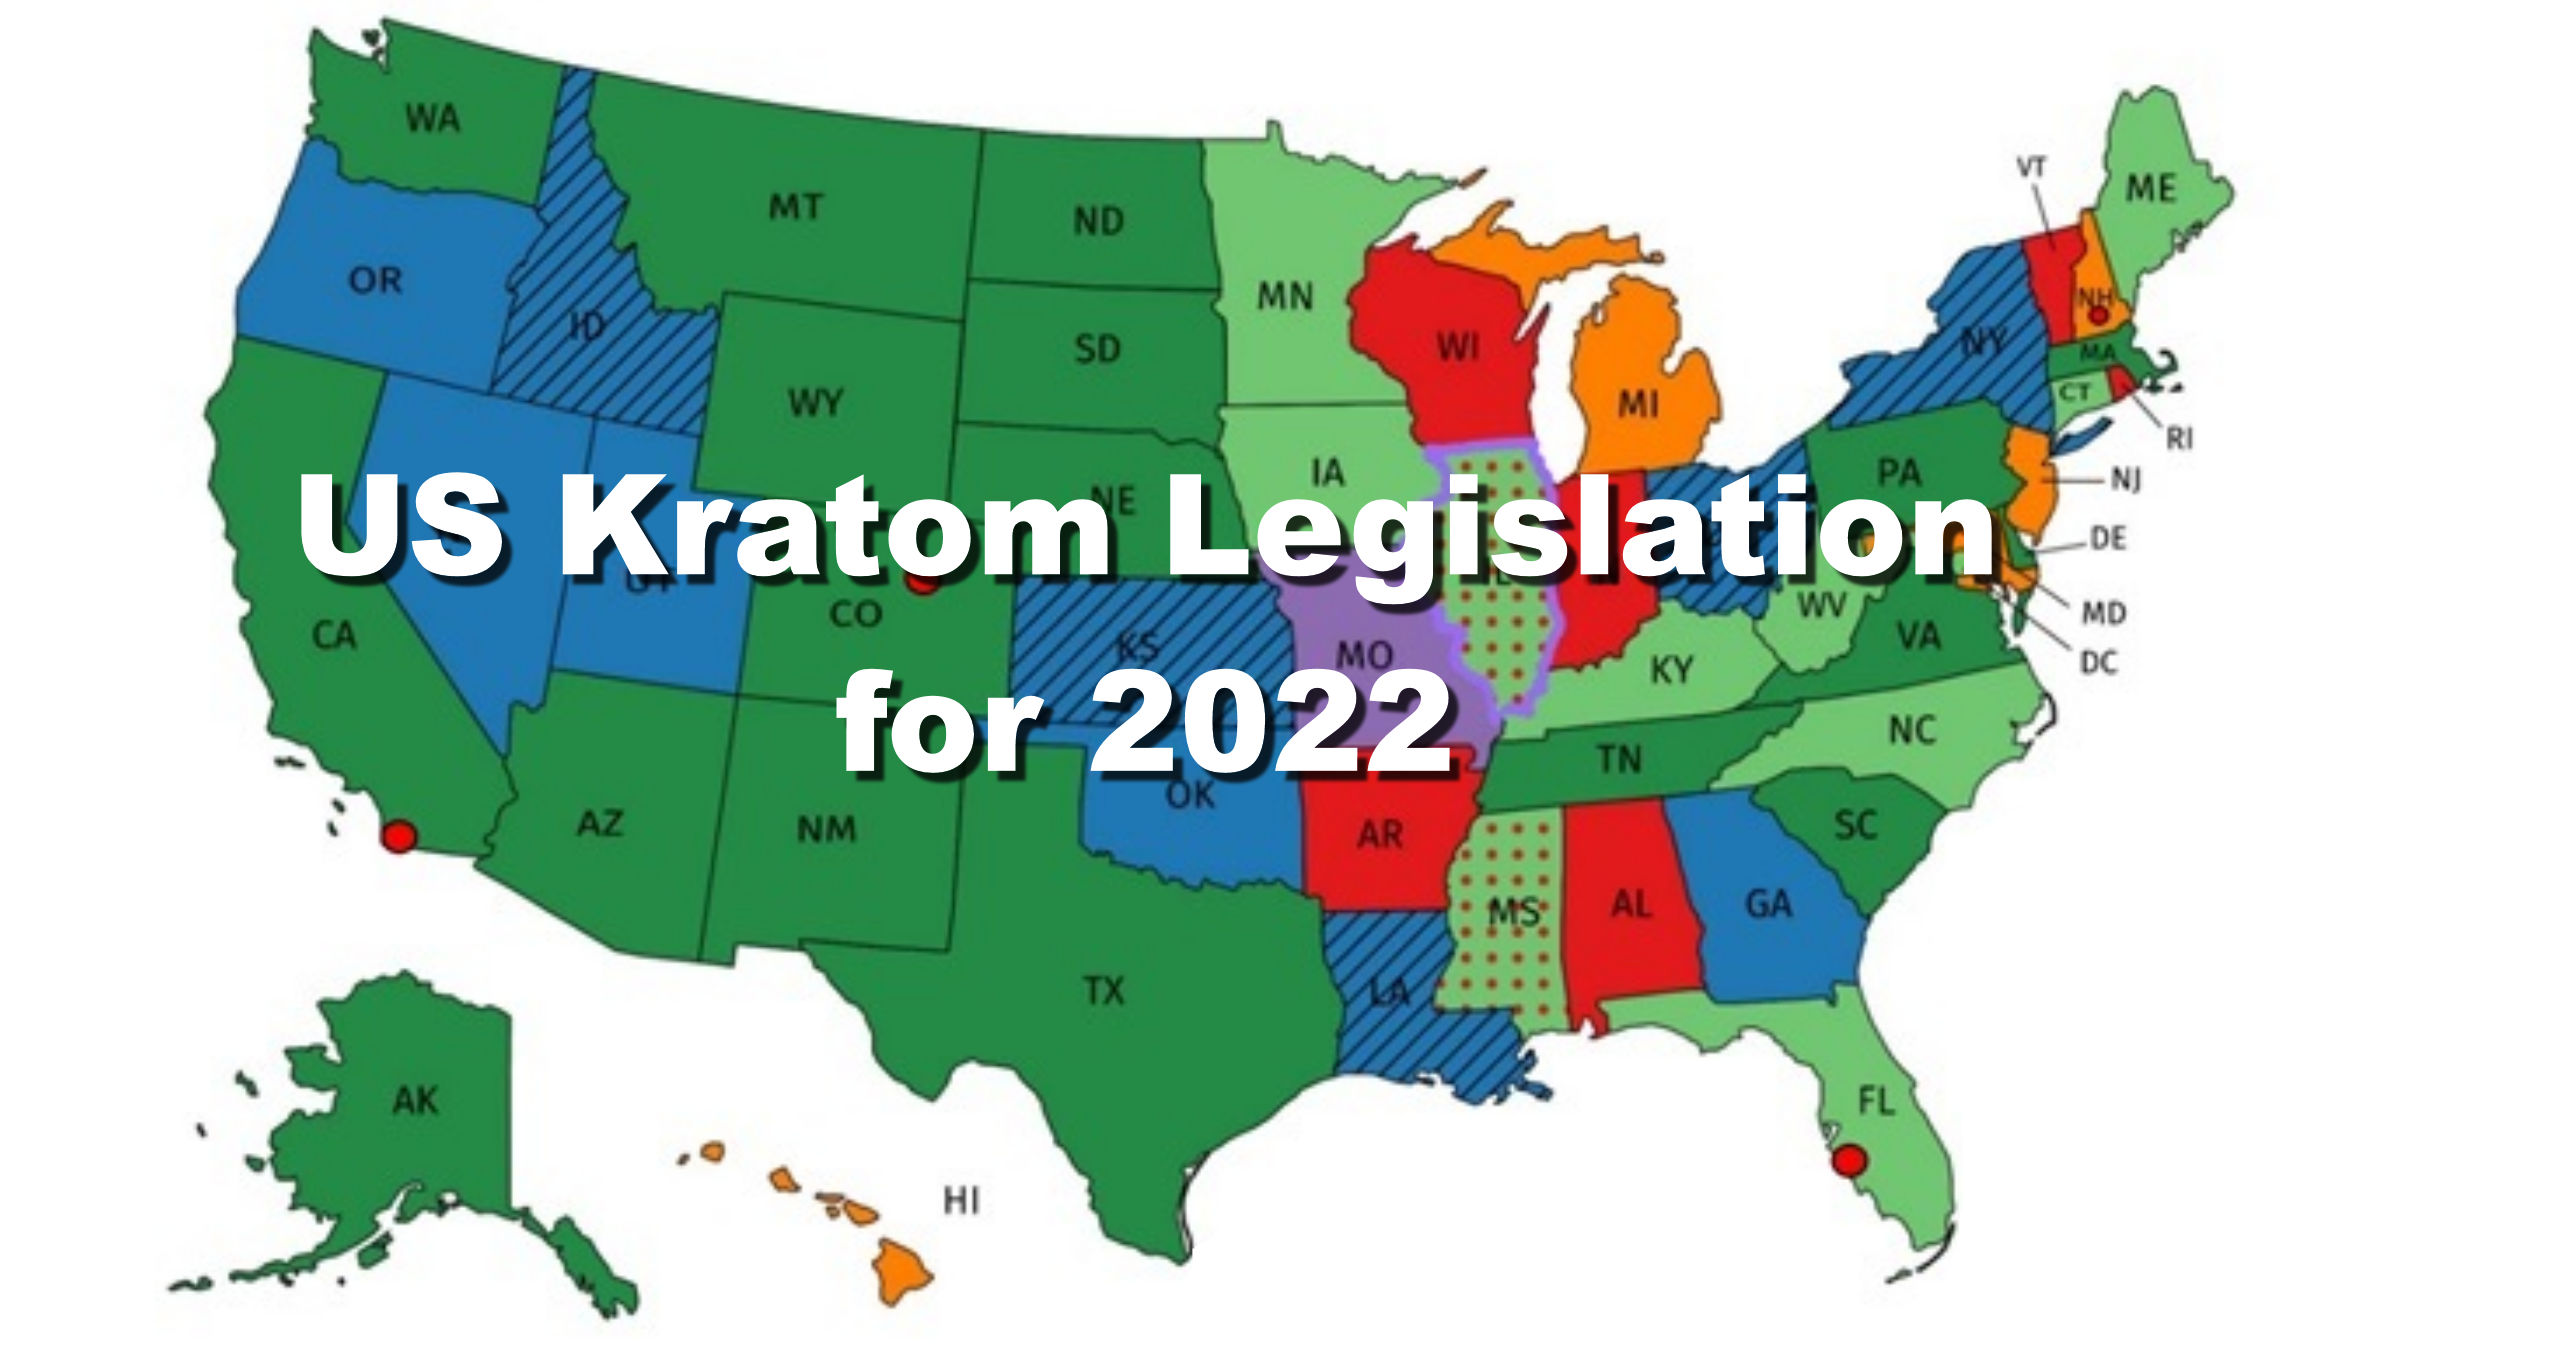 US Kratom Legislation for 2022